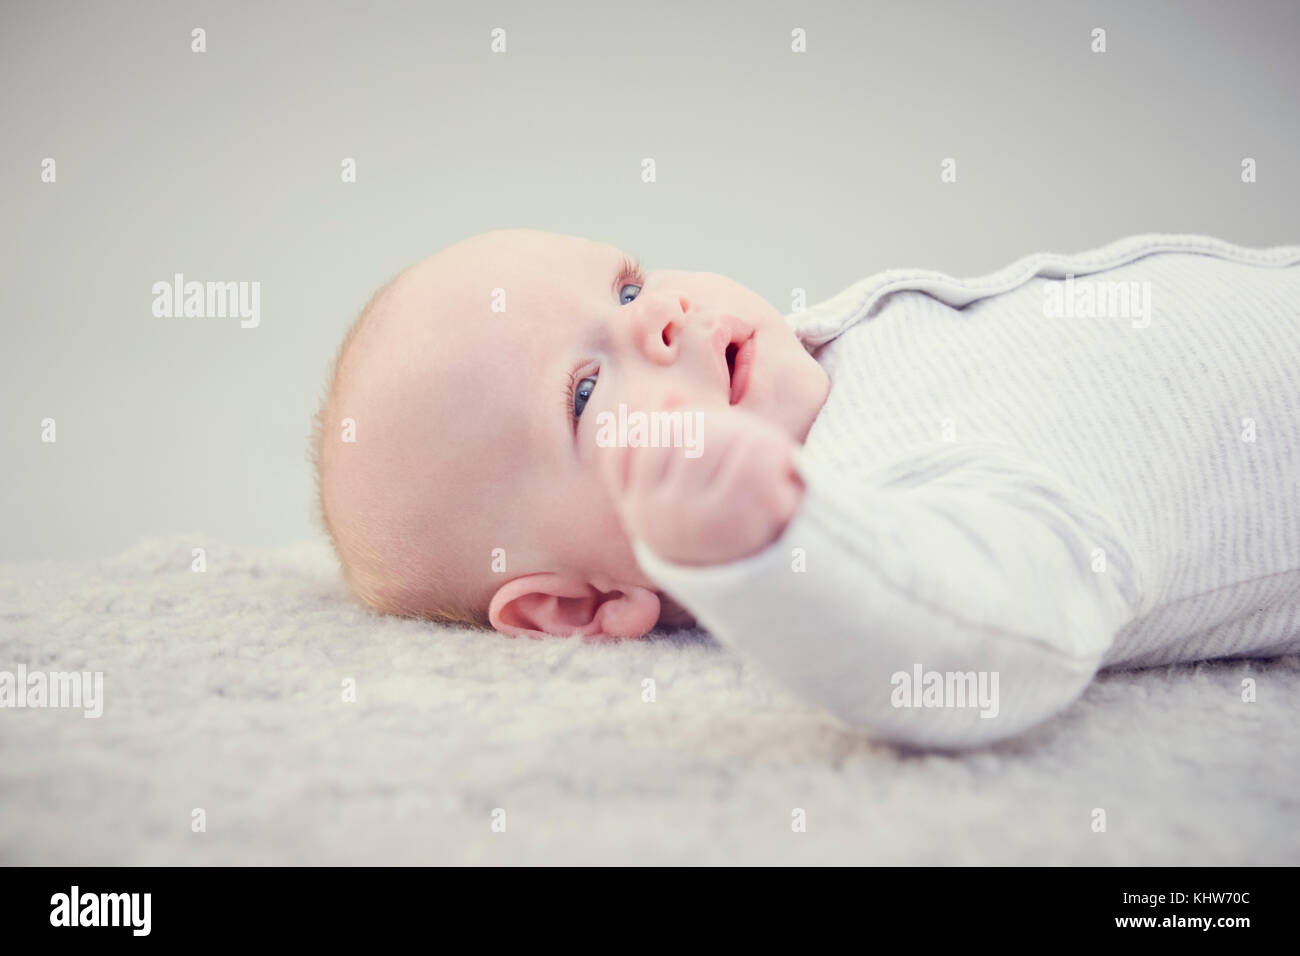 Bébé nouveau-né garçon, allongé sur un tapis, close-up Banque D'Images